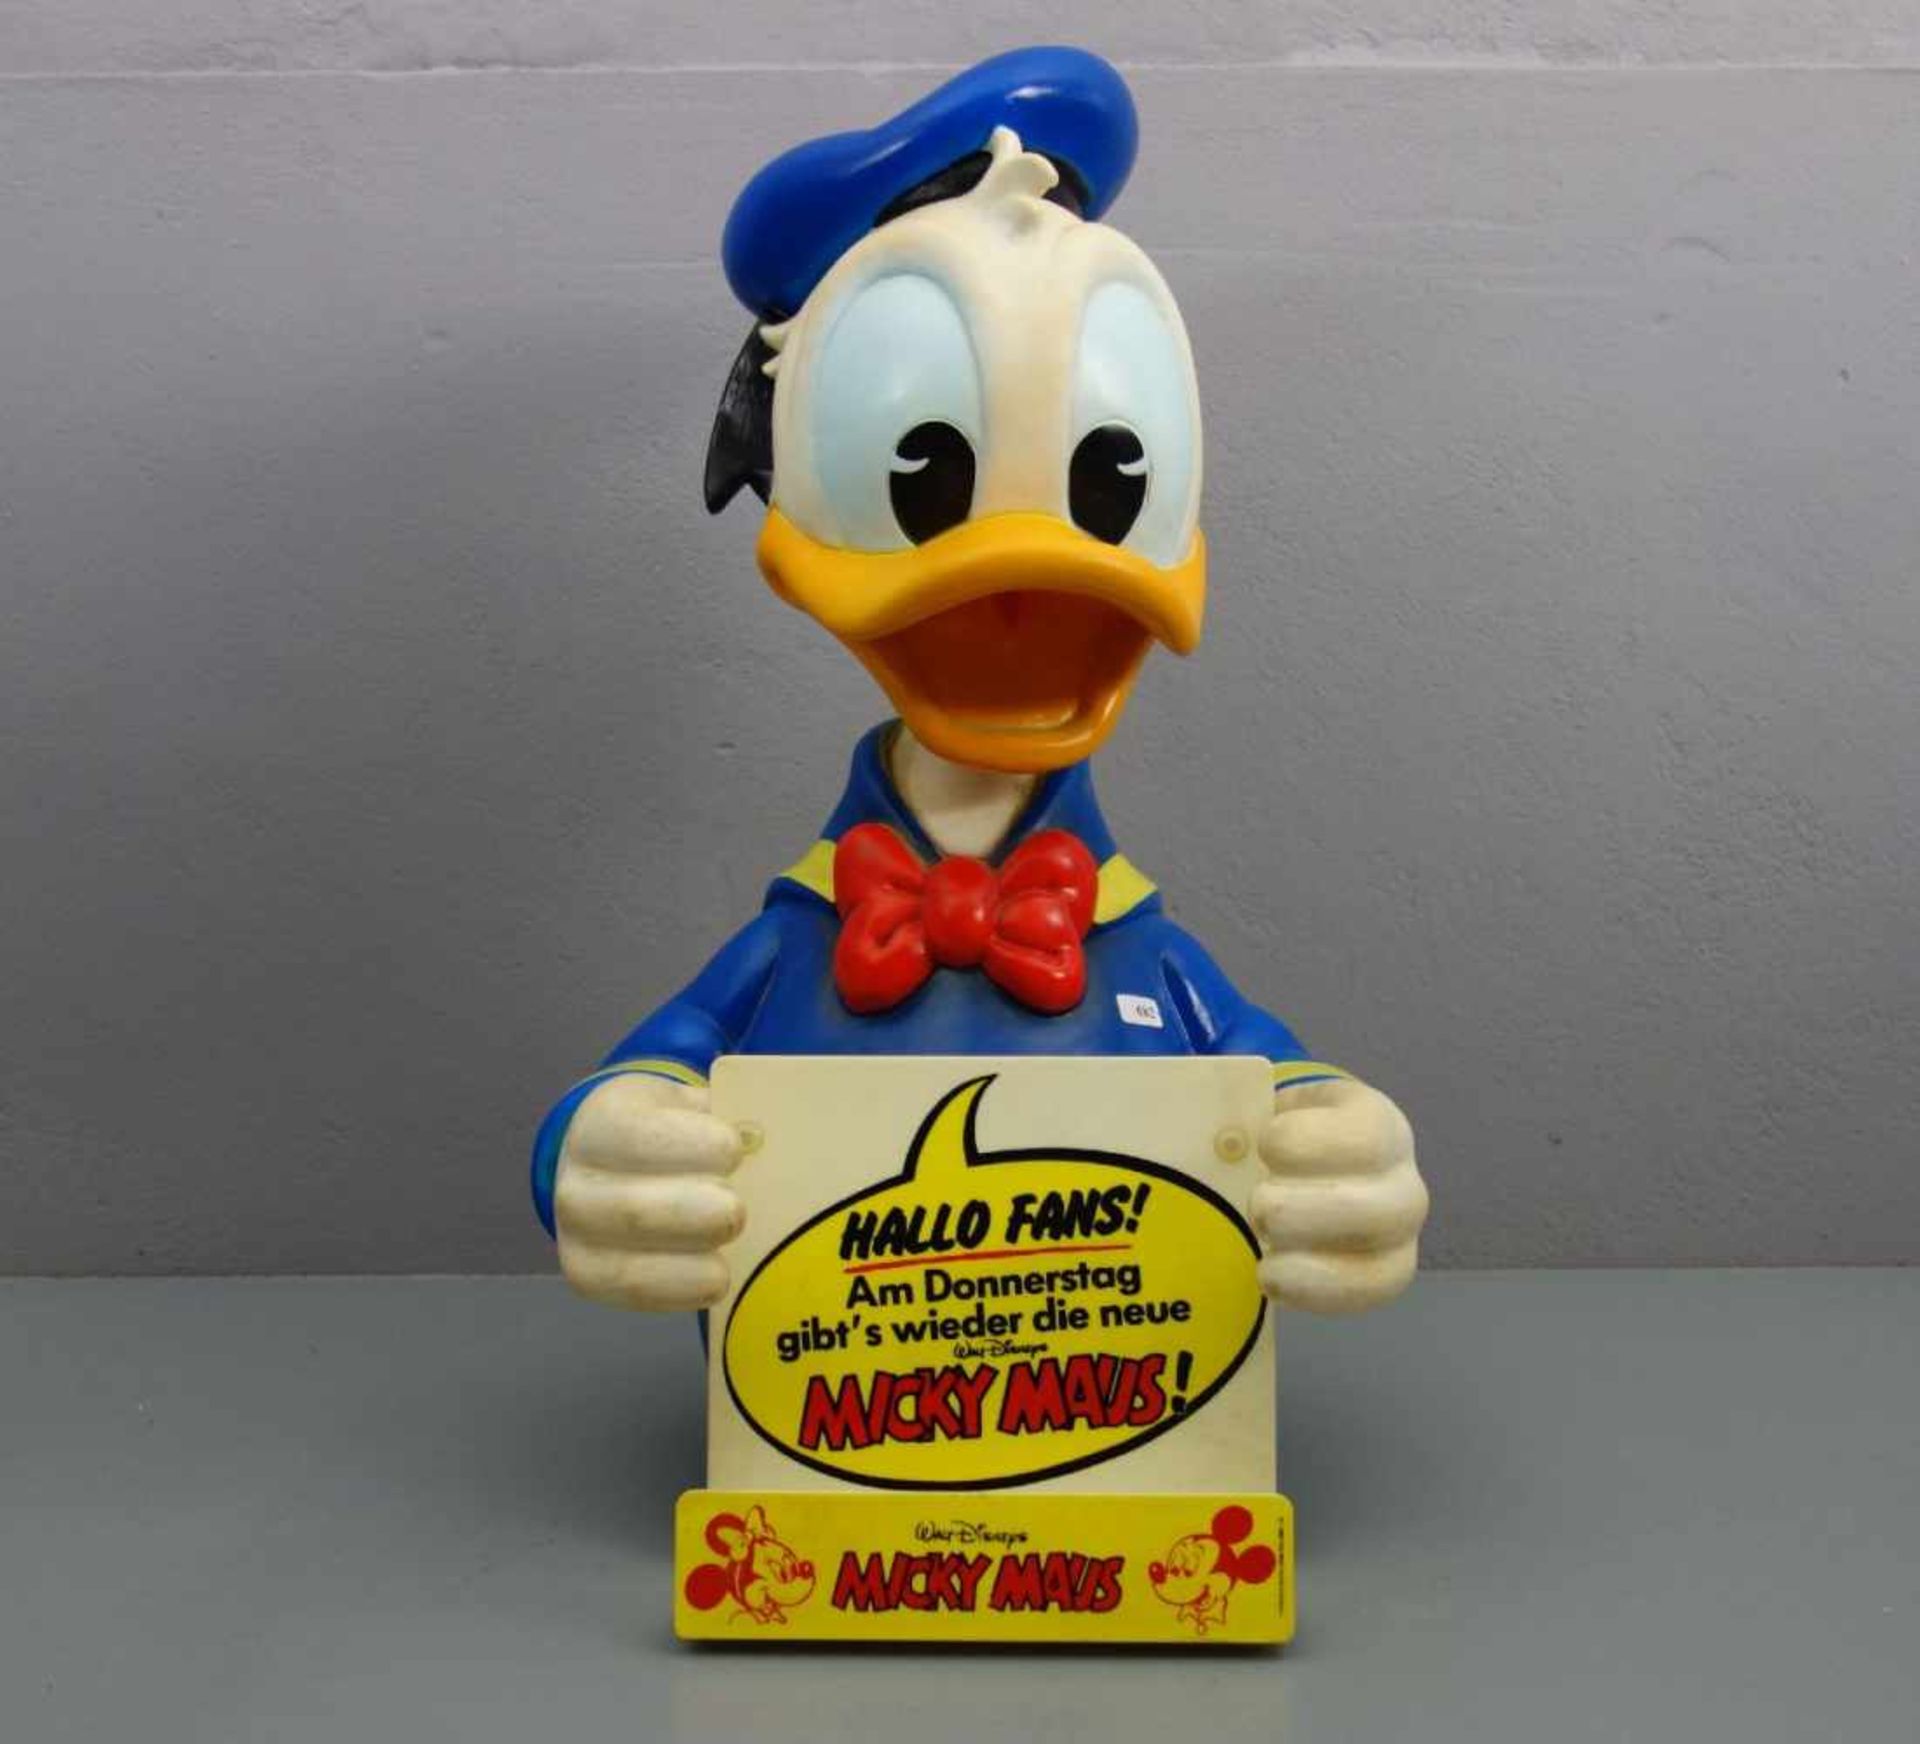 WALT DISNEY - WERBEAUFSTELLER / MERCHANDISE "Donald Duck", Thermoplastik, farbig gefasst.